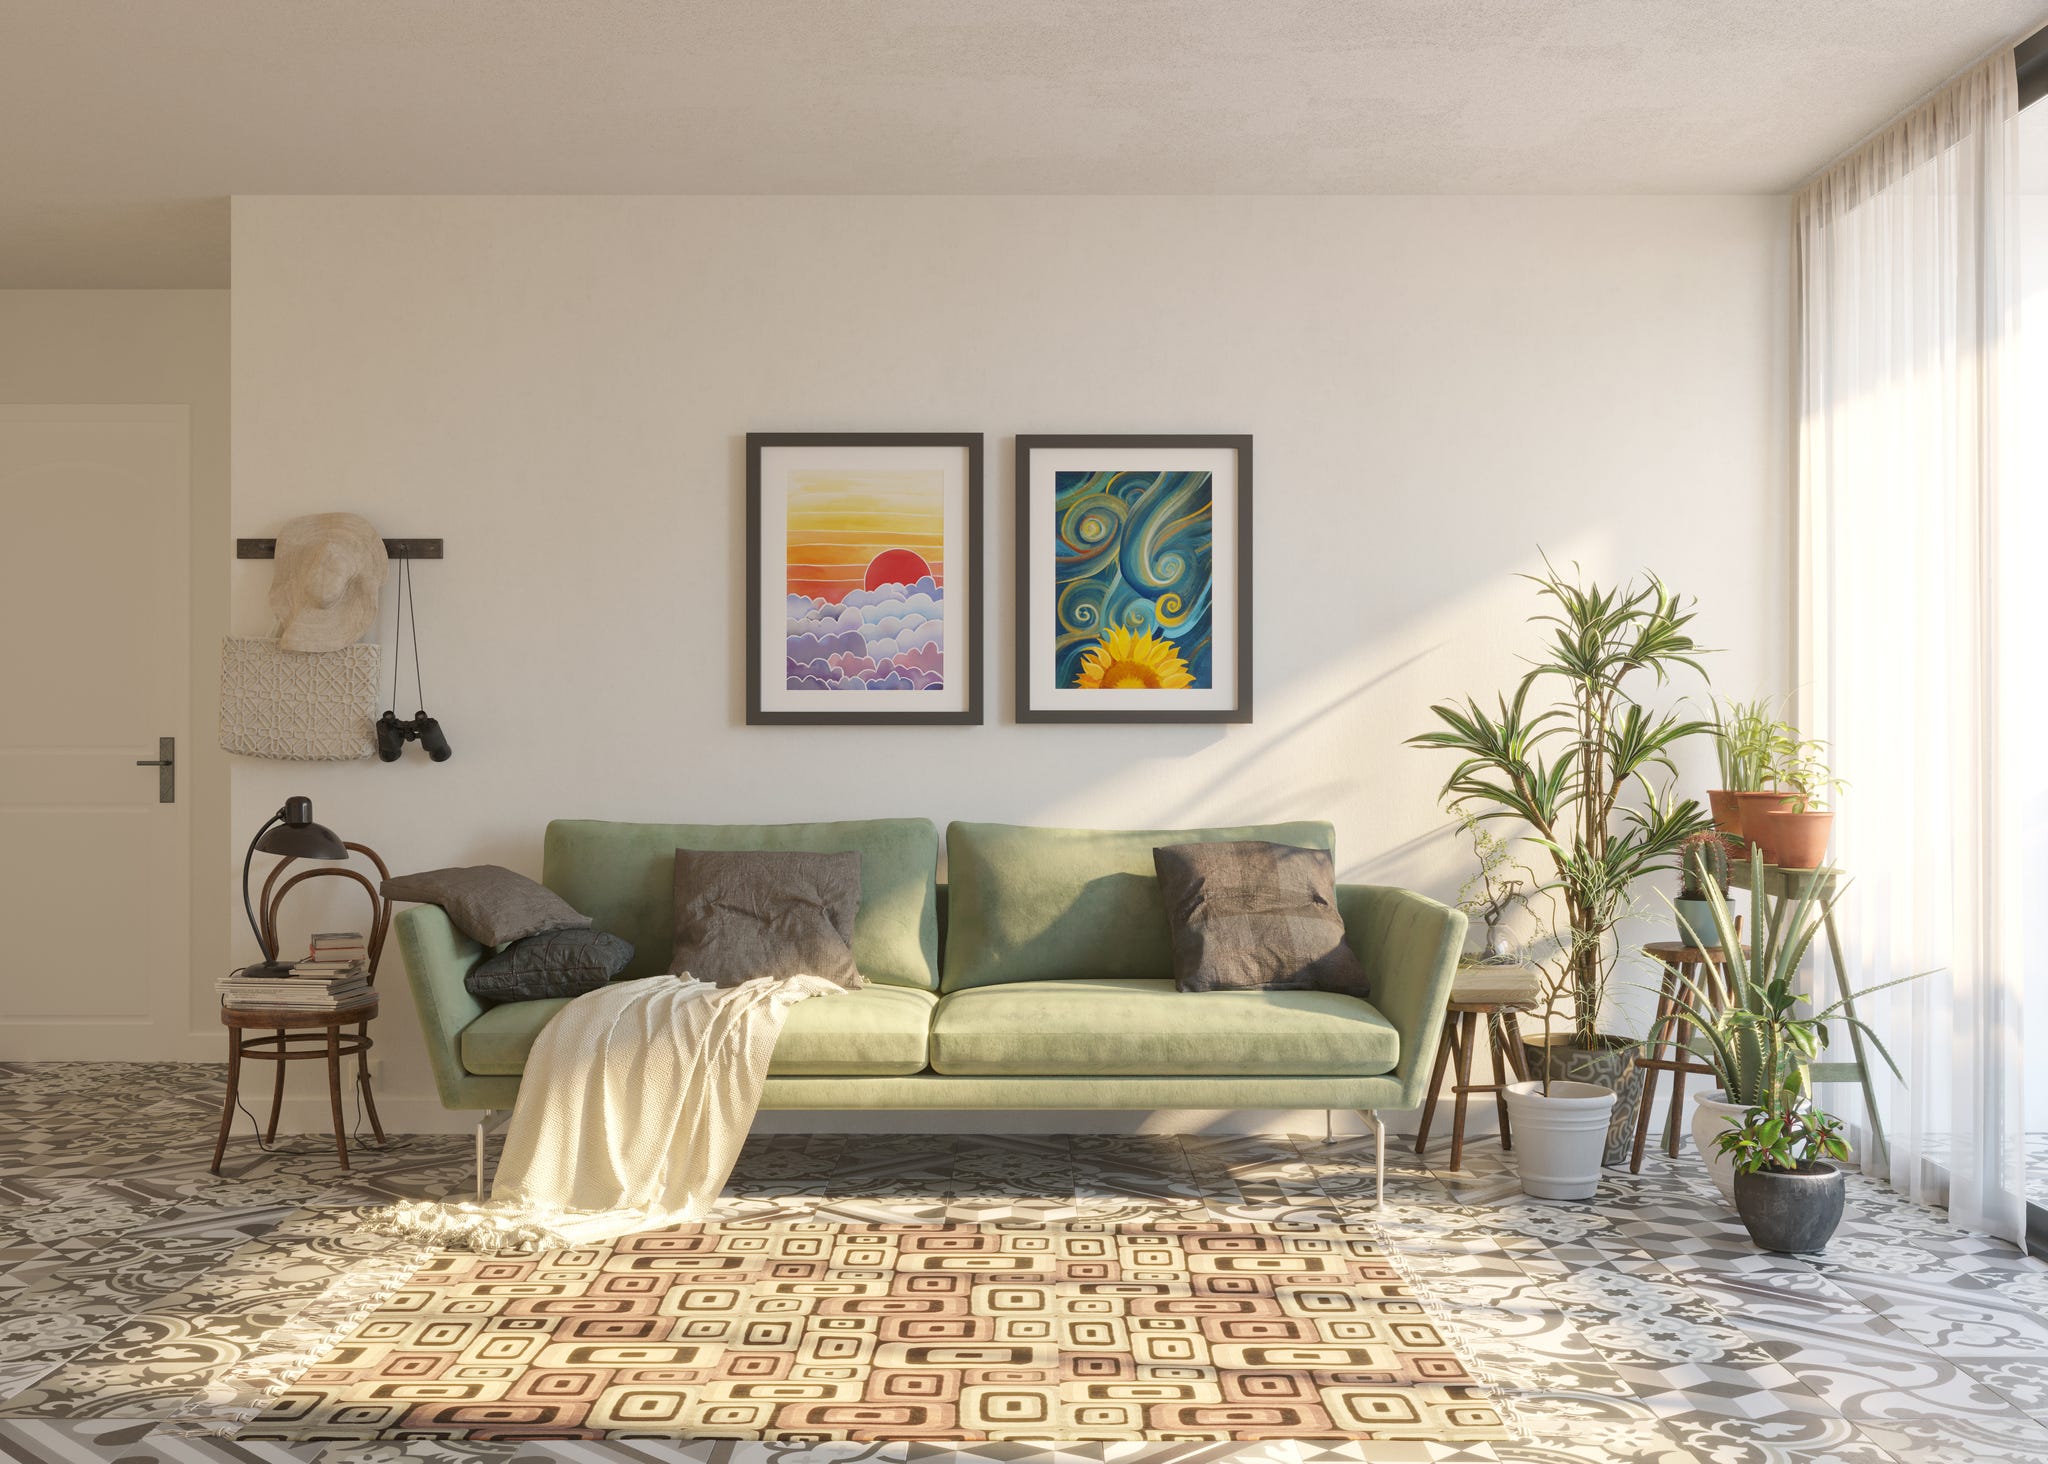 Grünes Midcentury Modern Sofa unter Kunstwerken im weißen Wohnzimmer